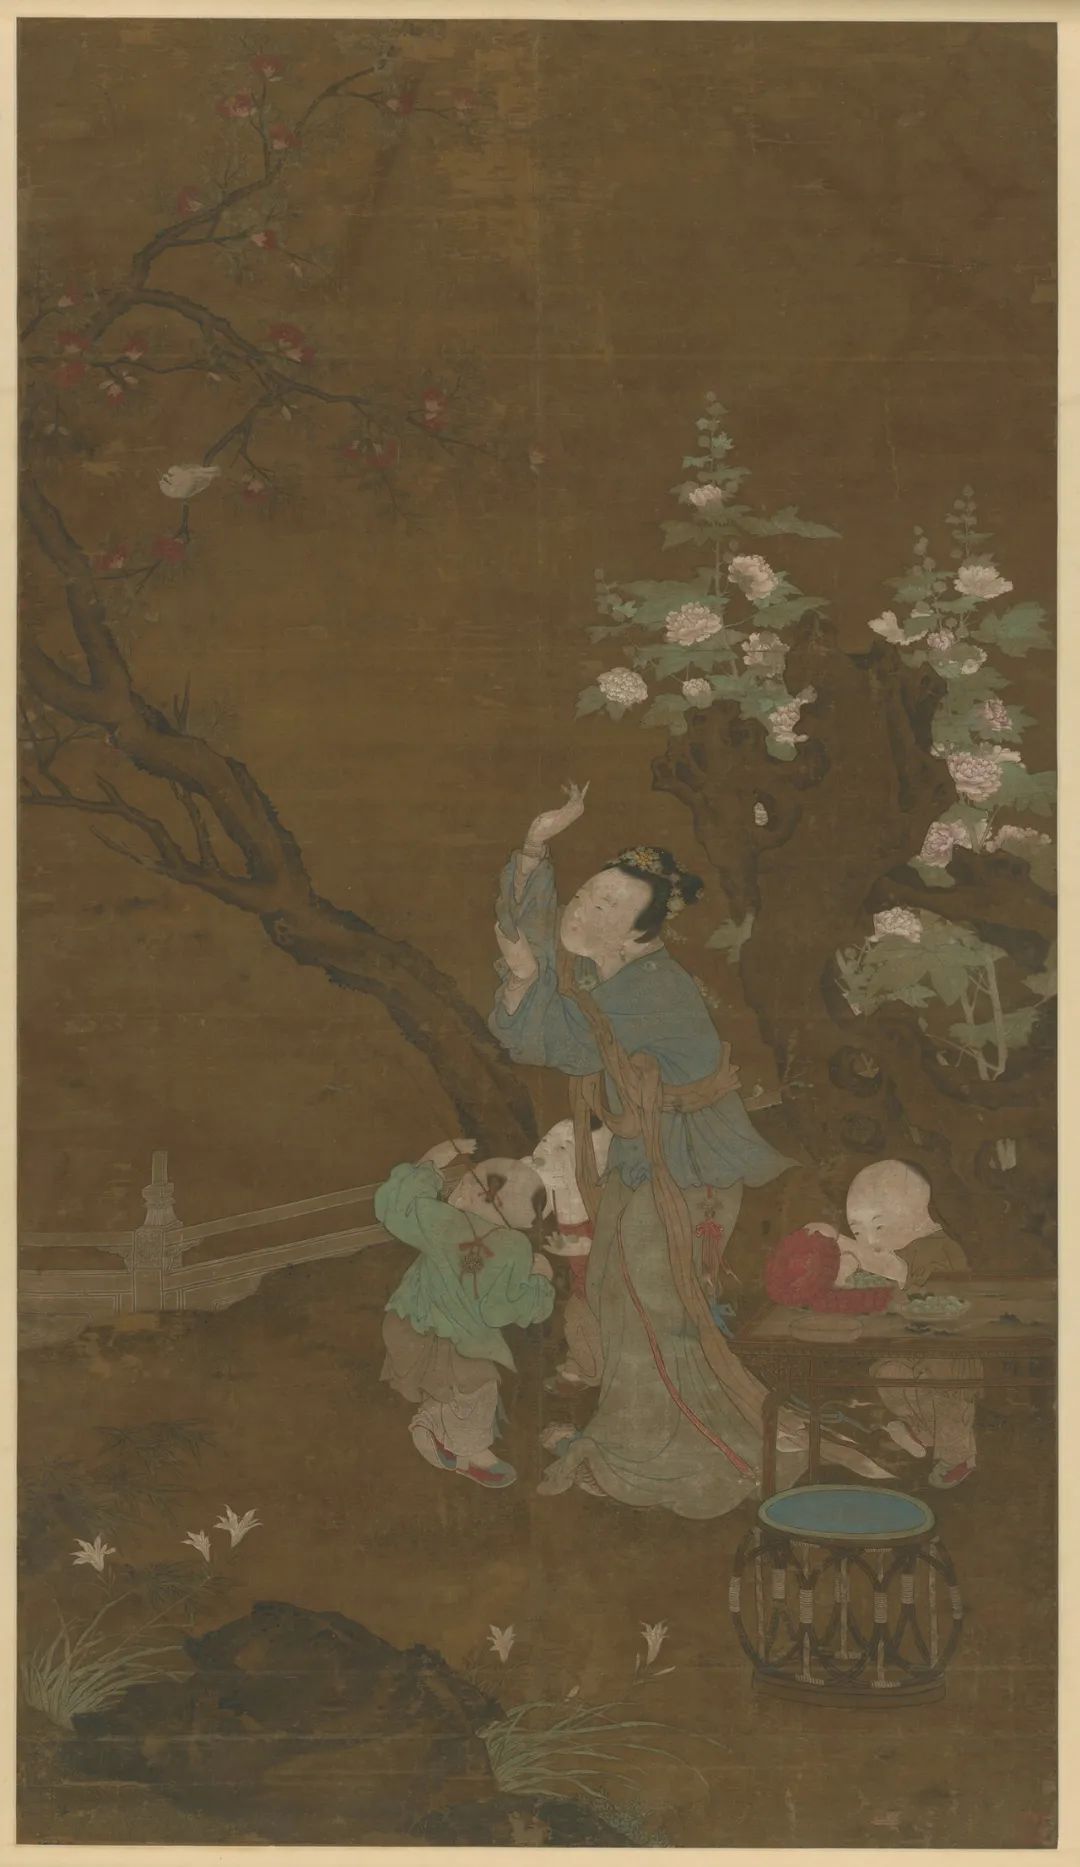 明·佚名·庭院嬉戏图 绢本设色 184.2×105.2厘米 湖南省博物馆藏